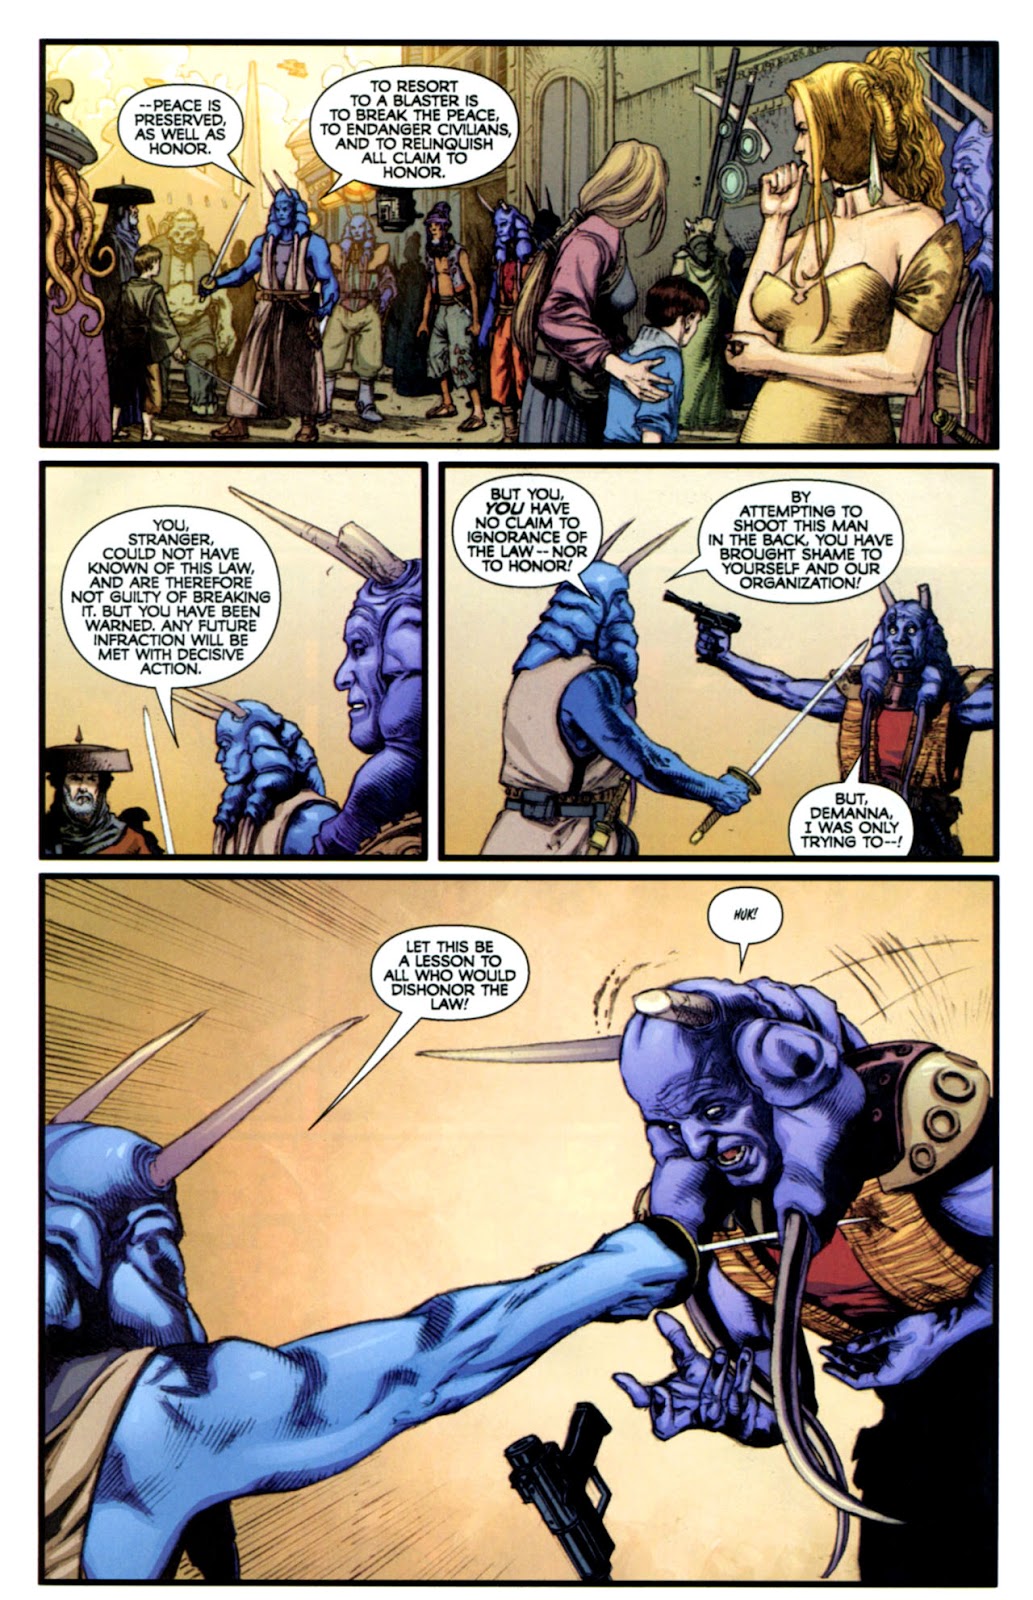 Star Wars: Dark Times issue 13 - Blue Harvest, Part 1 - Page 19